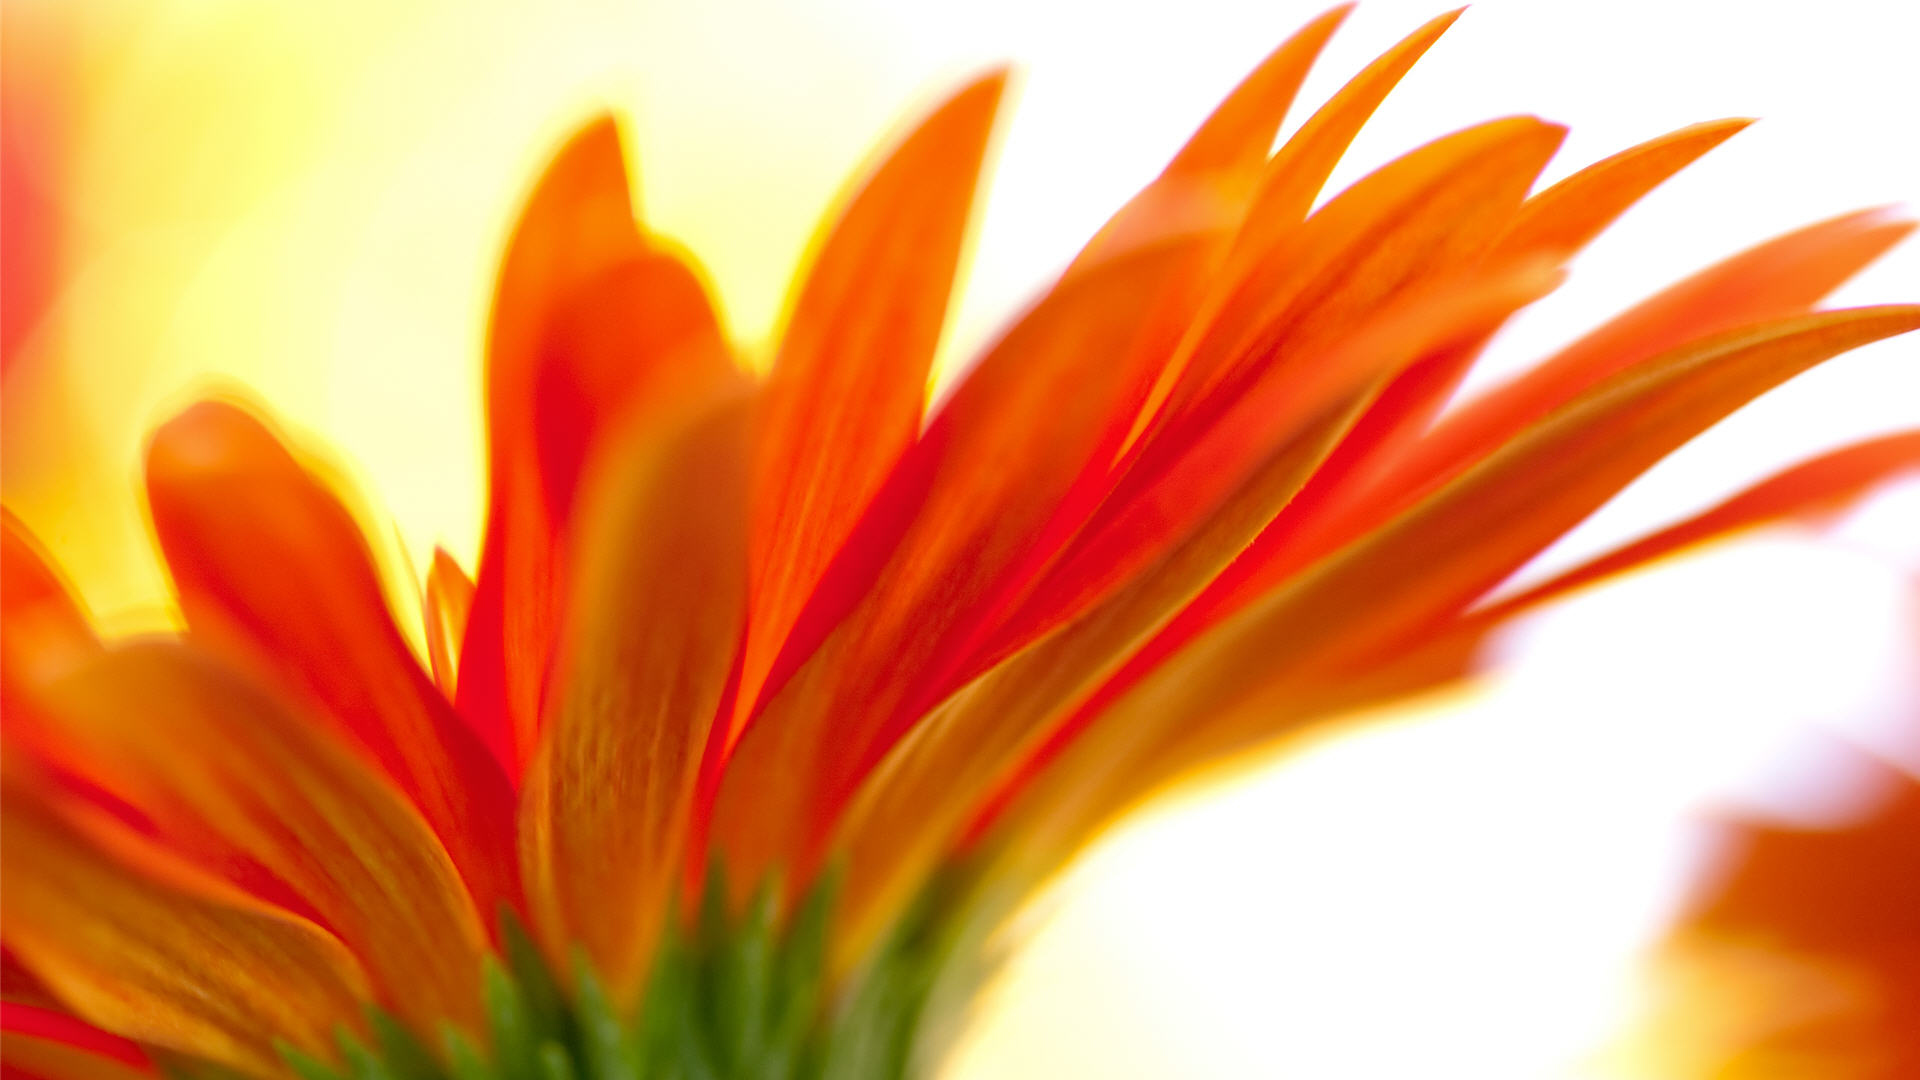 orange flower backgrounds - HD Desktop Wallpapers | 4k HD